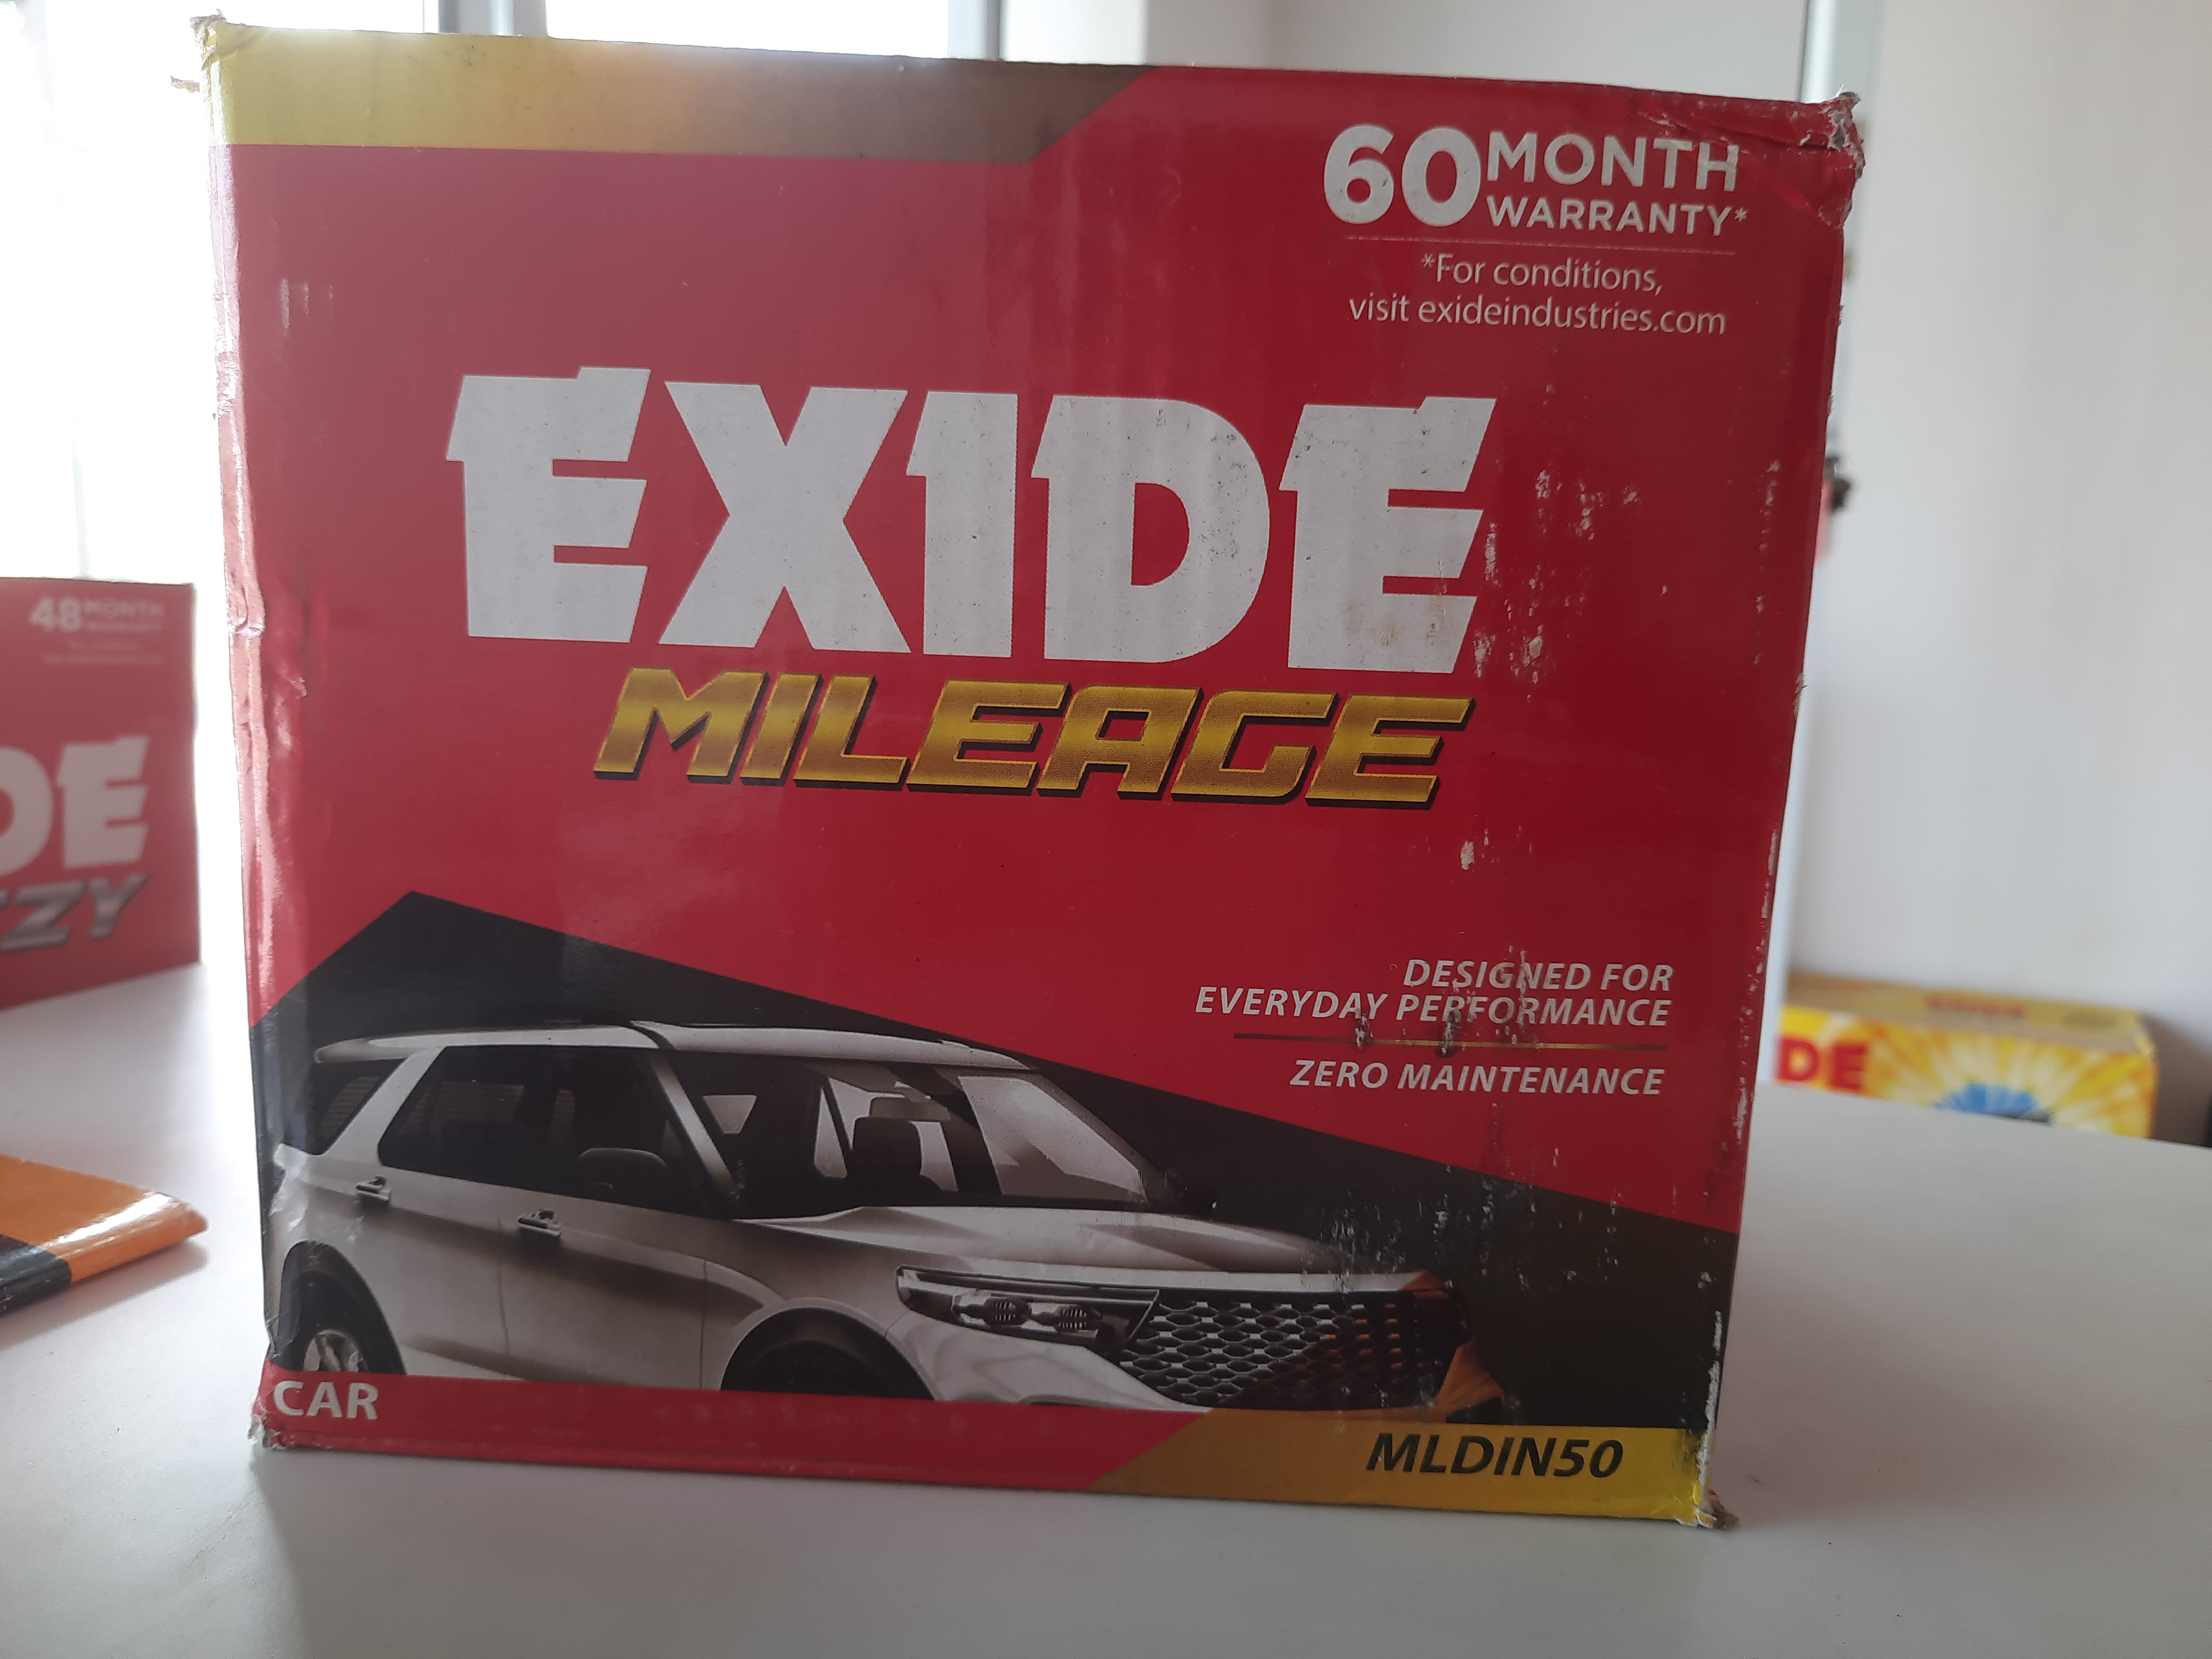 Exide car battery image